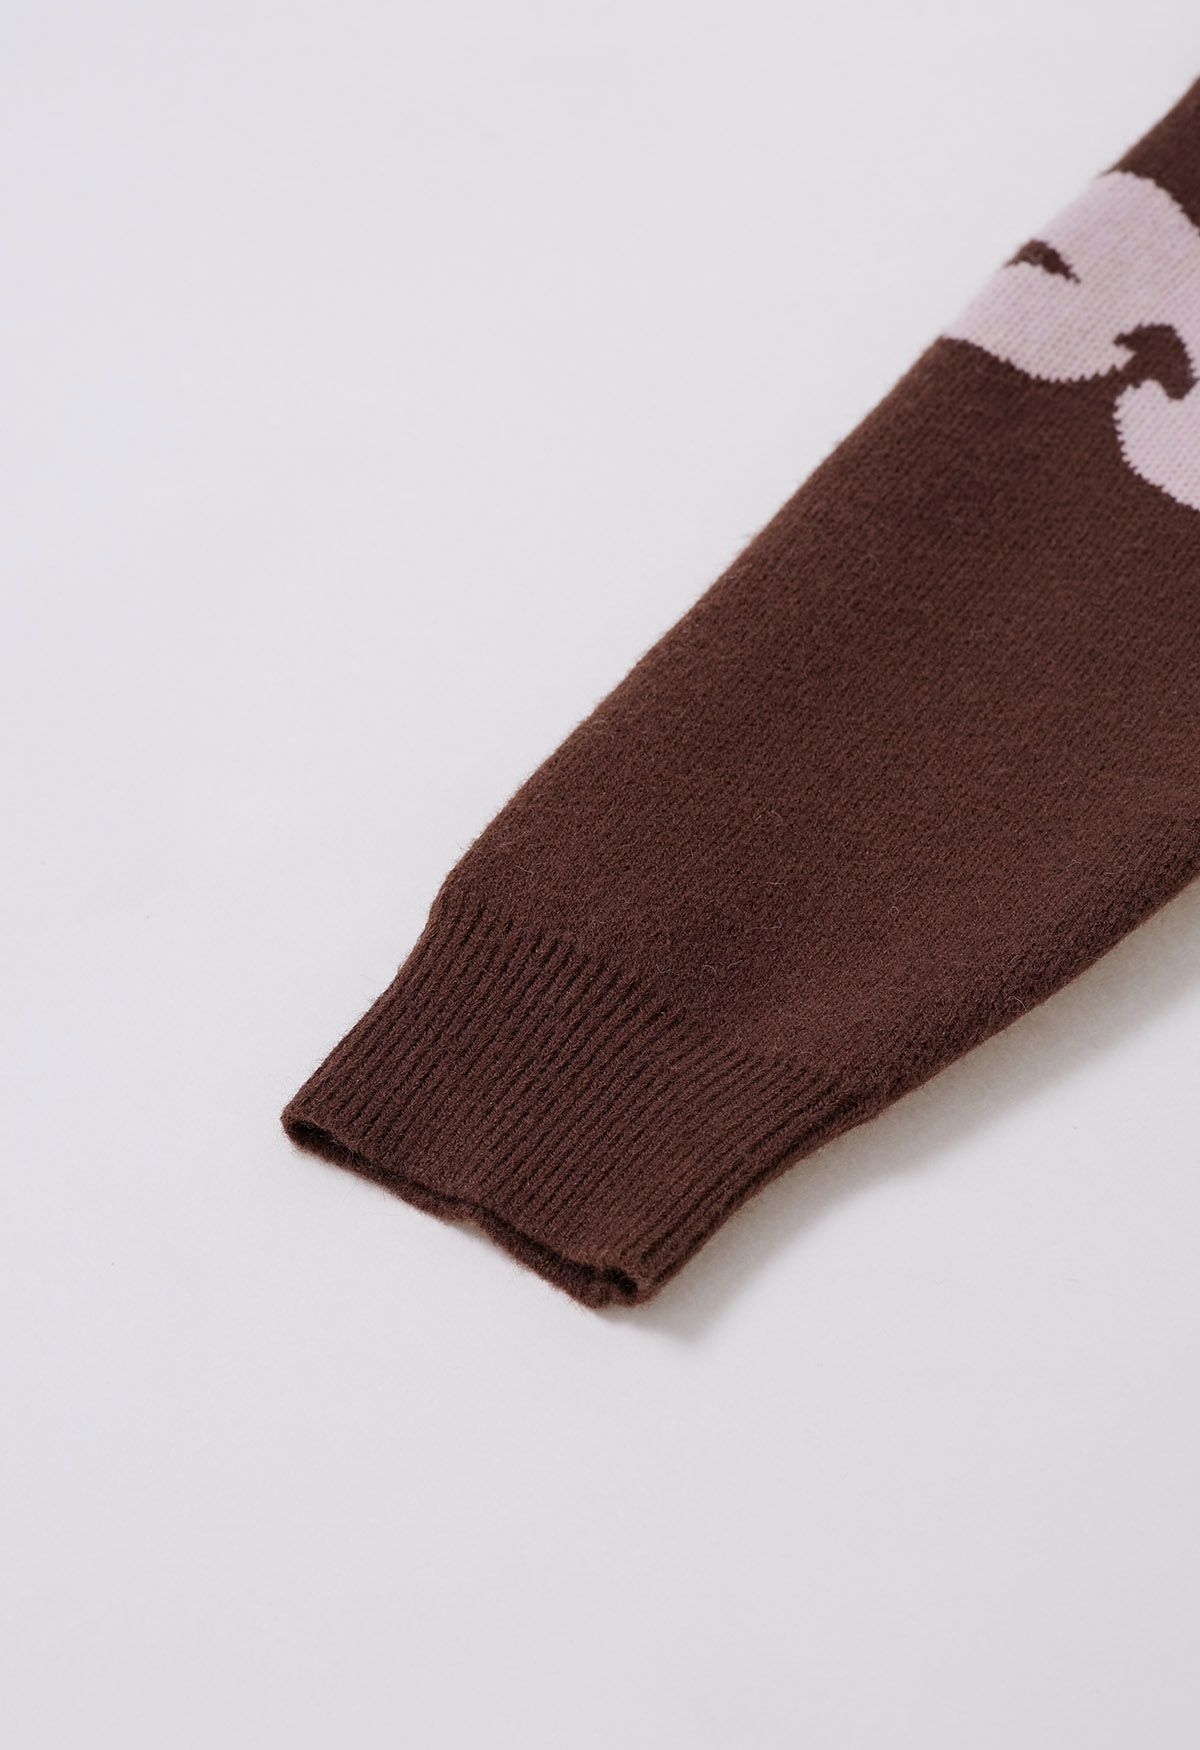 Contrast Flower Pattern Knit Sweater in Brown